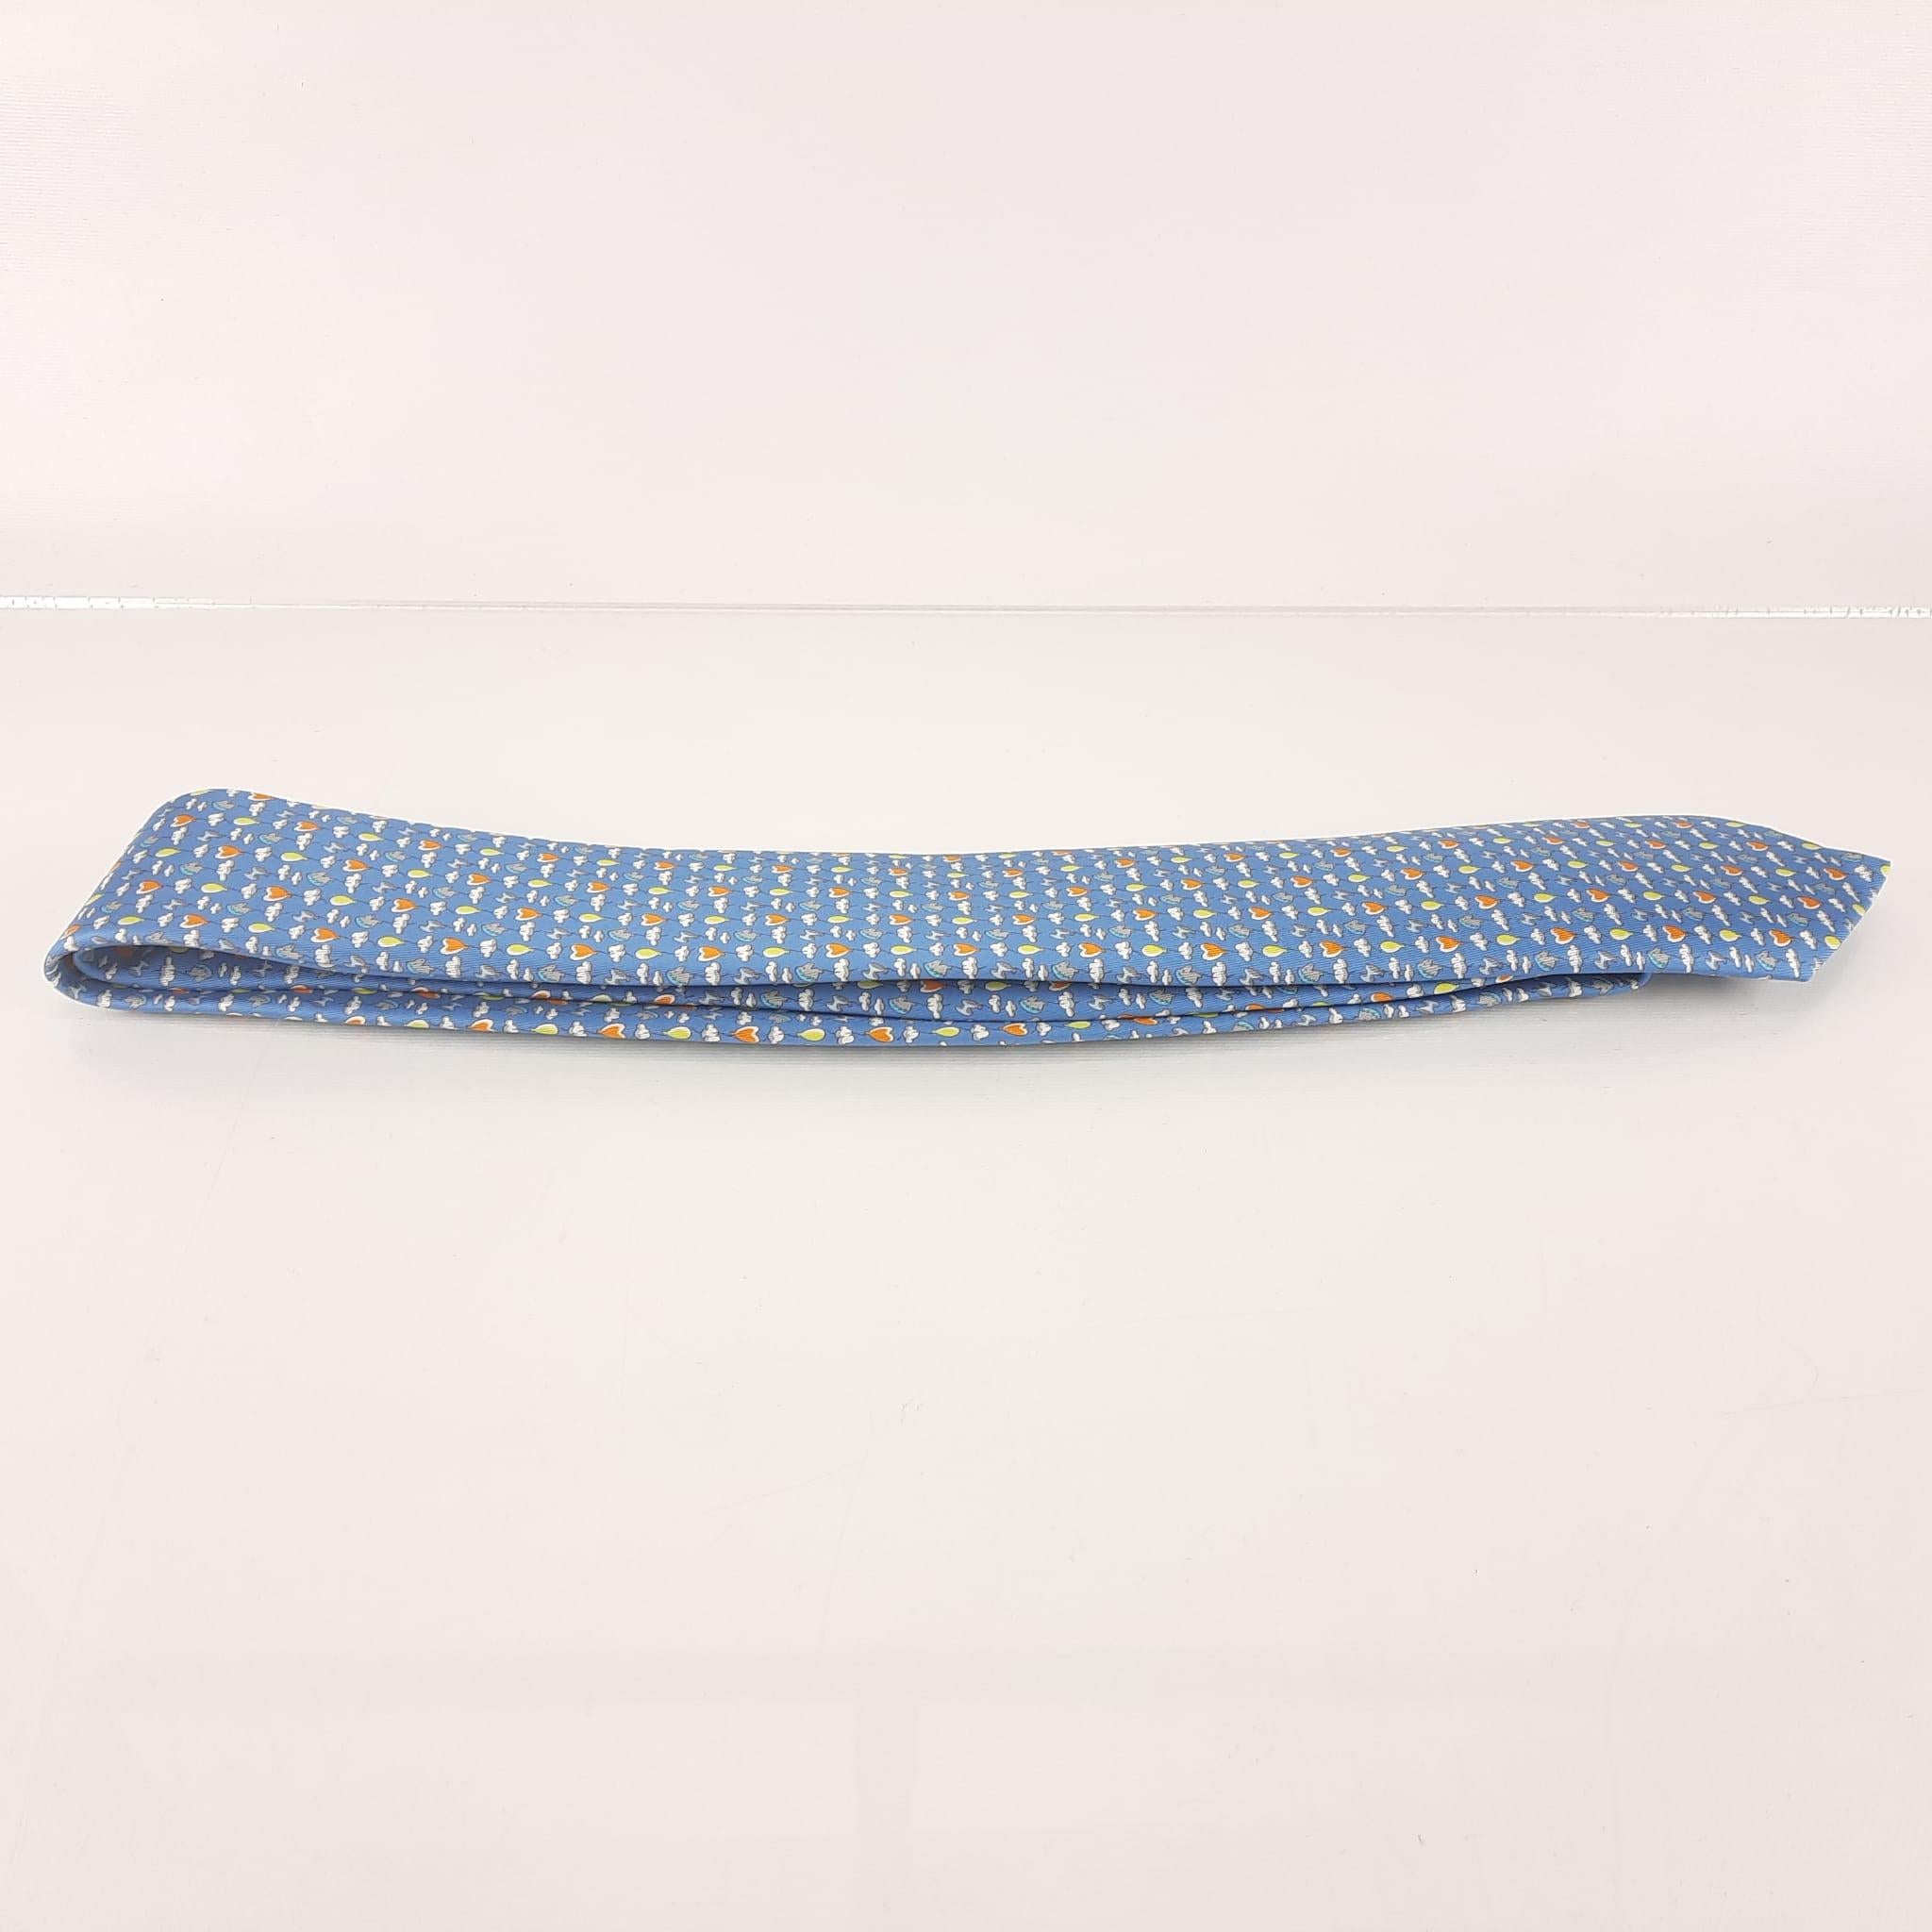 Cravate en sergé de soie cousu main 
Fabriqué en France
Conçu par Philippe Mouquet
Largeur : 7 cm